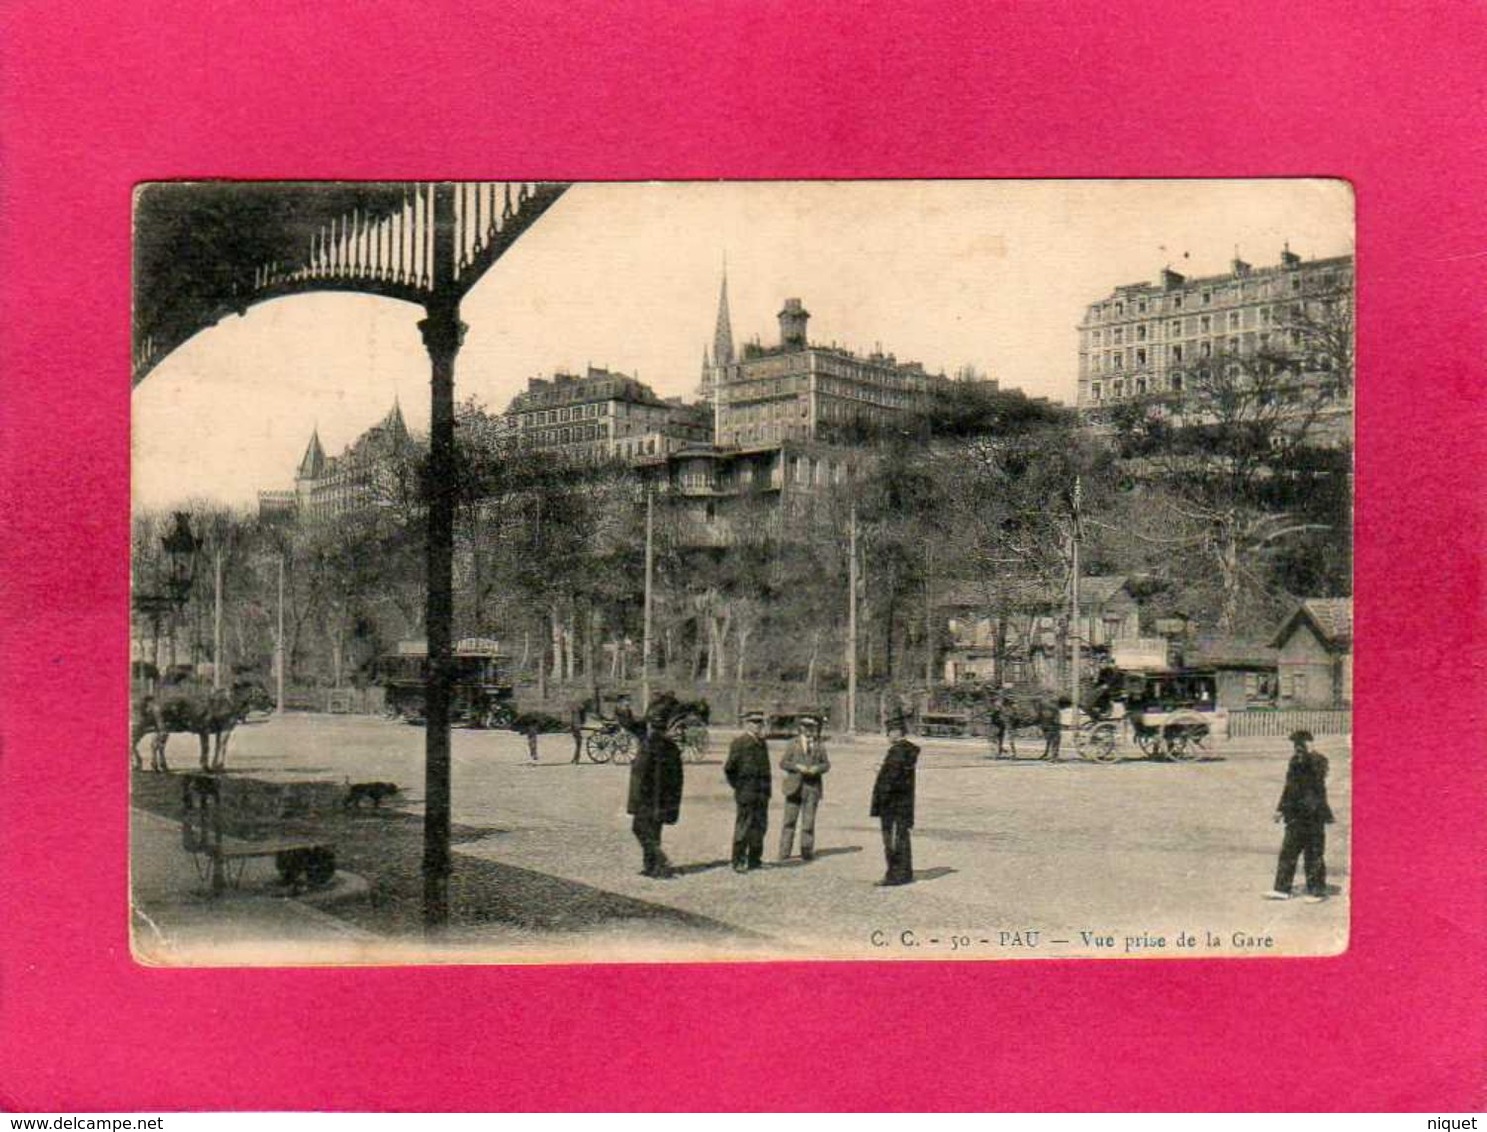 64 Pyrénées Atlantiques, Pau, Vue Prise De La Gare, Animée, Calèches, Chefs De Gare, 1905, (C. C.) - Pau